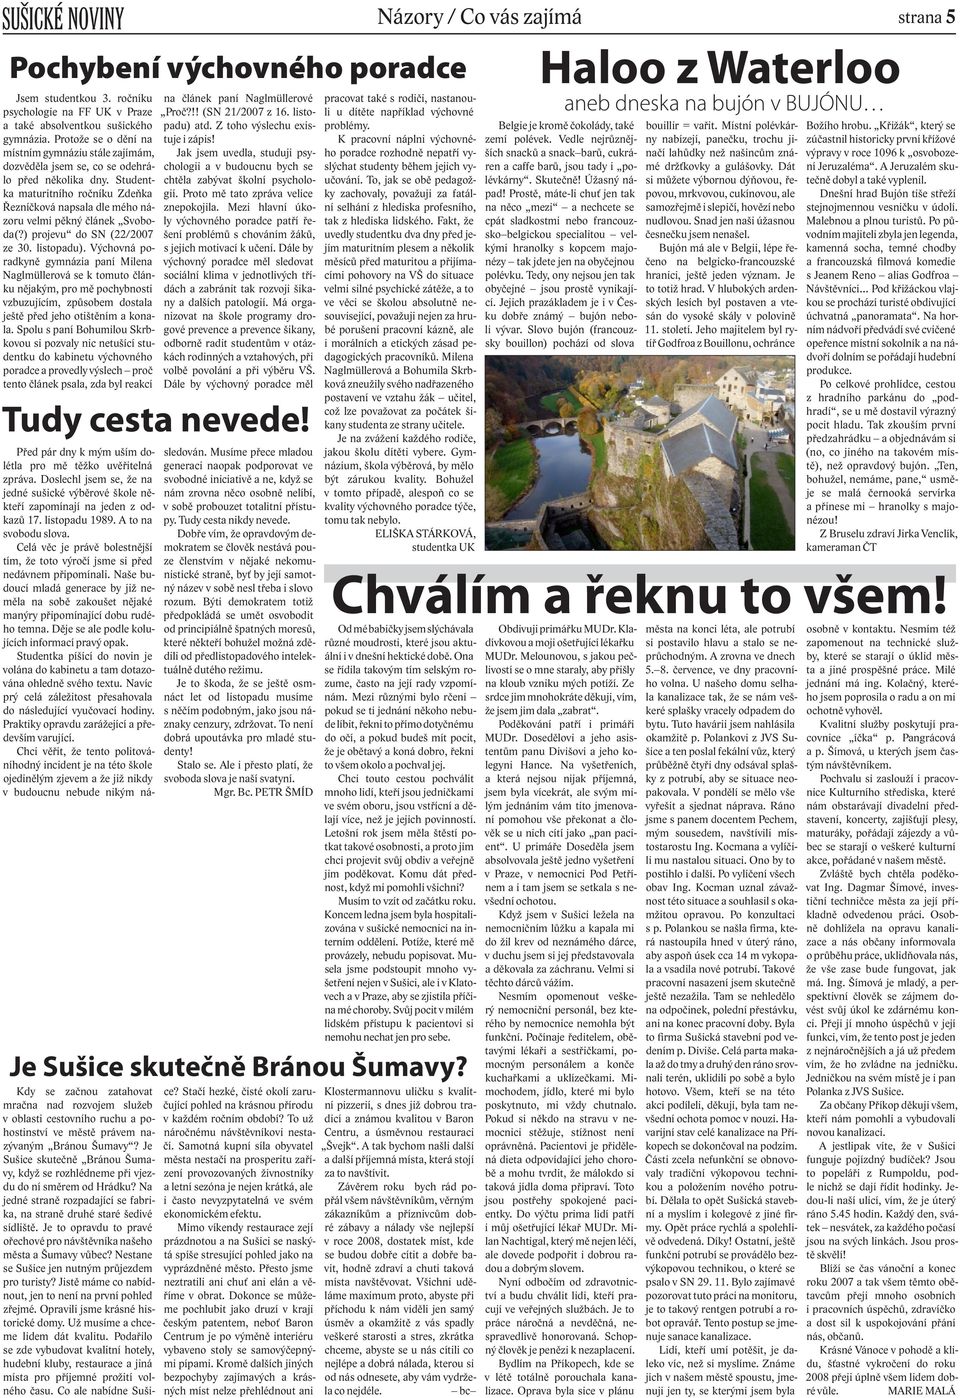 Studentka maturitního ročníku Zdeňka Řezníčková napsala dle mého názoru velmi pěkný článek Svoboda(?) projevu do SN (22/2007 ze 30. listopadu).